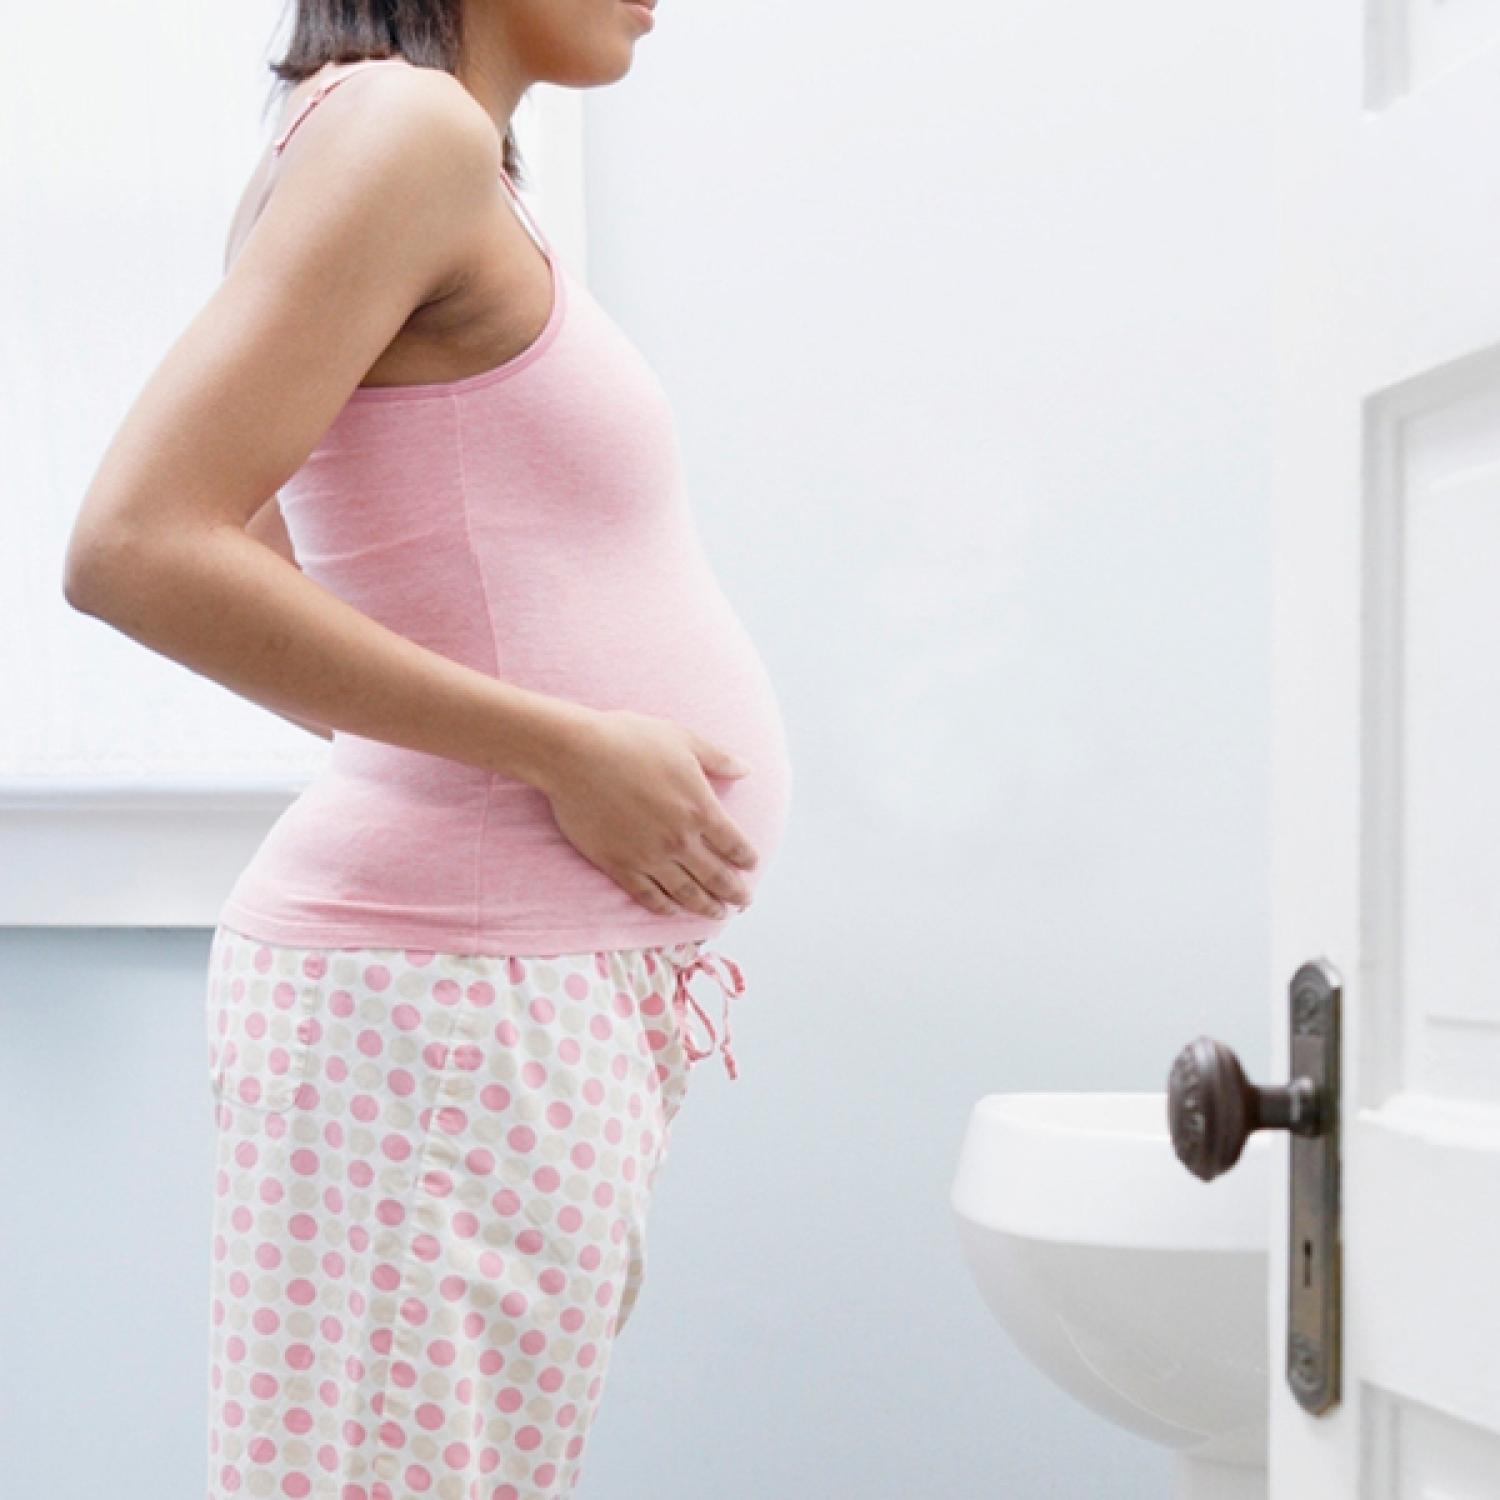 Vanmaterična trudnoća, opasnost bez simptoma